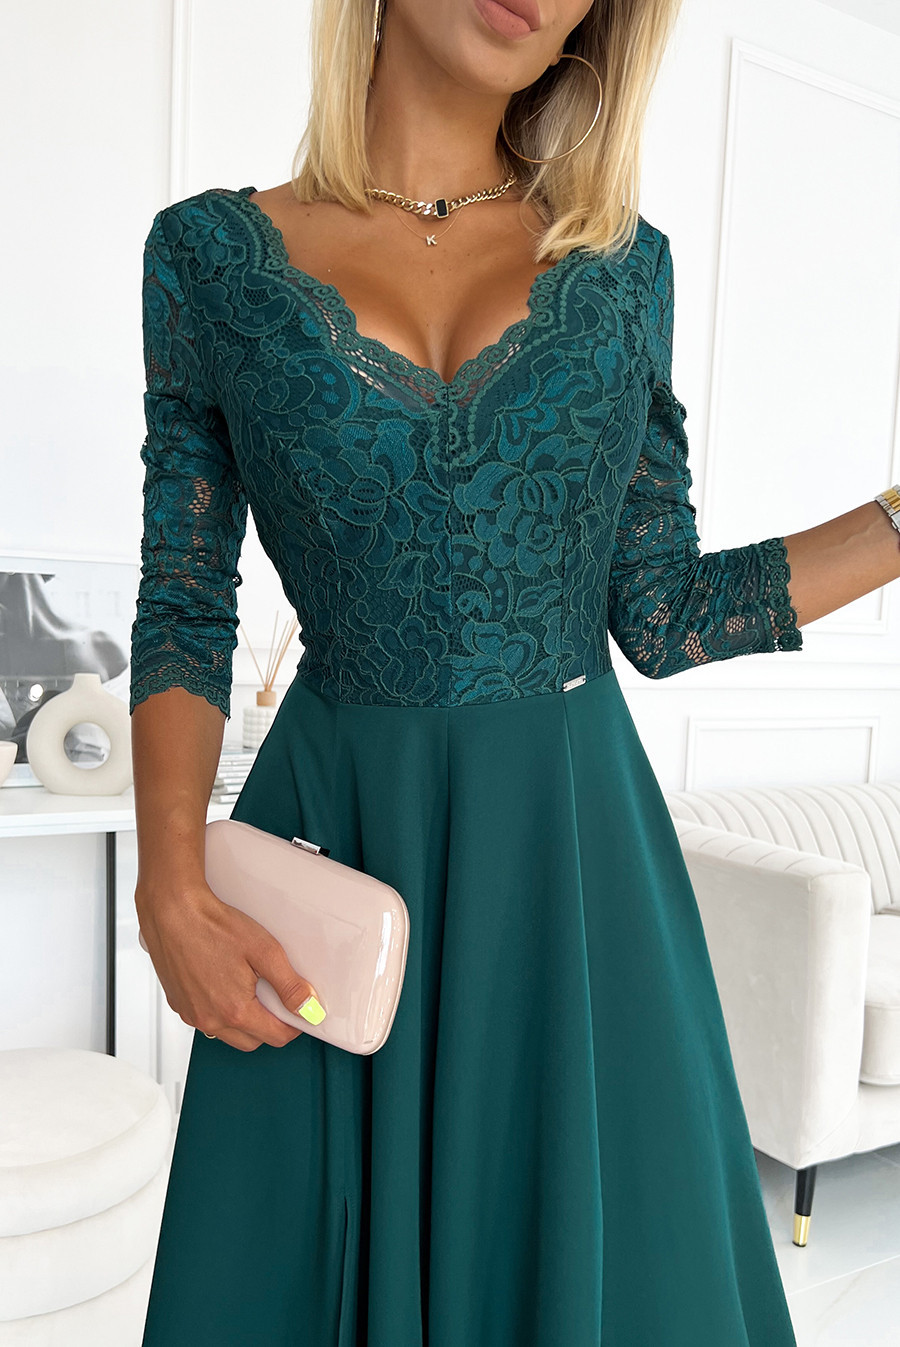 AMBER - Elegantní dlouhé dámské krajkové šaty v lahvově zelené barvě s výstřihem 309-5 L